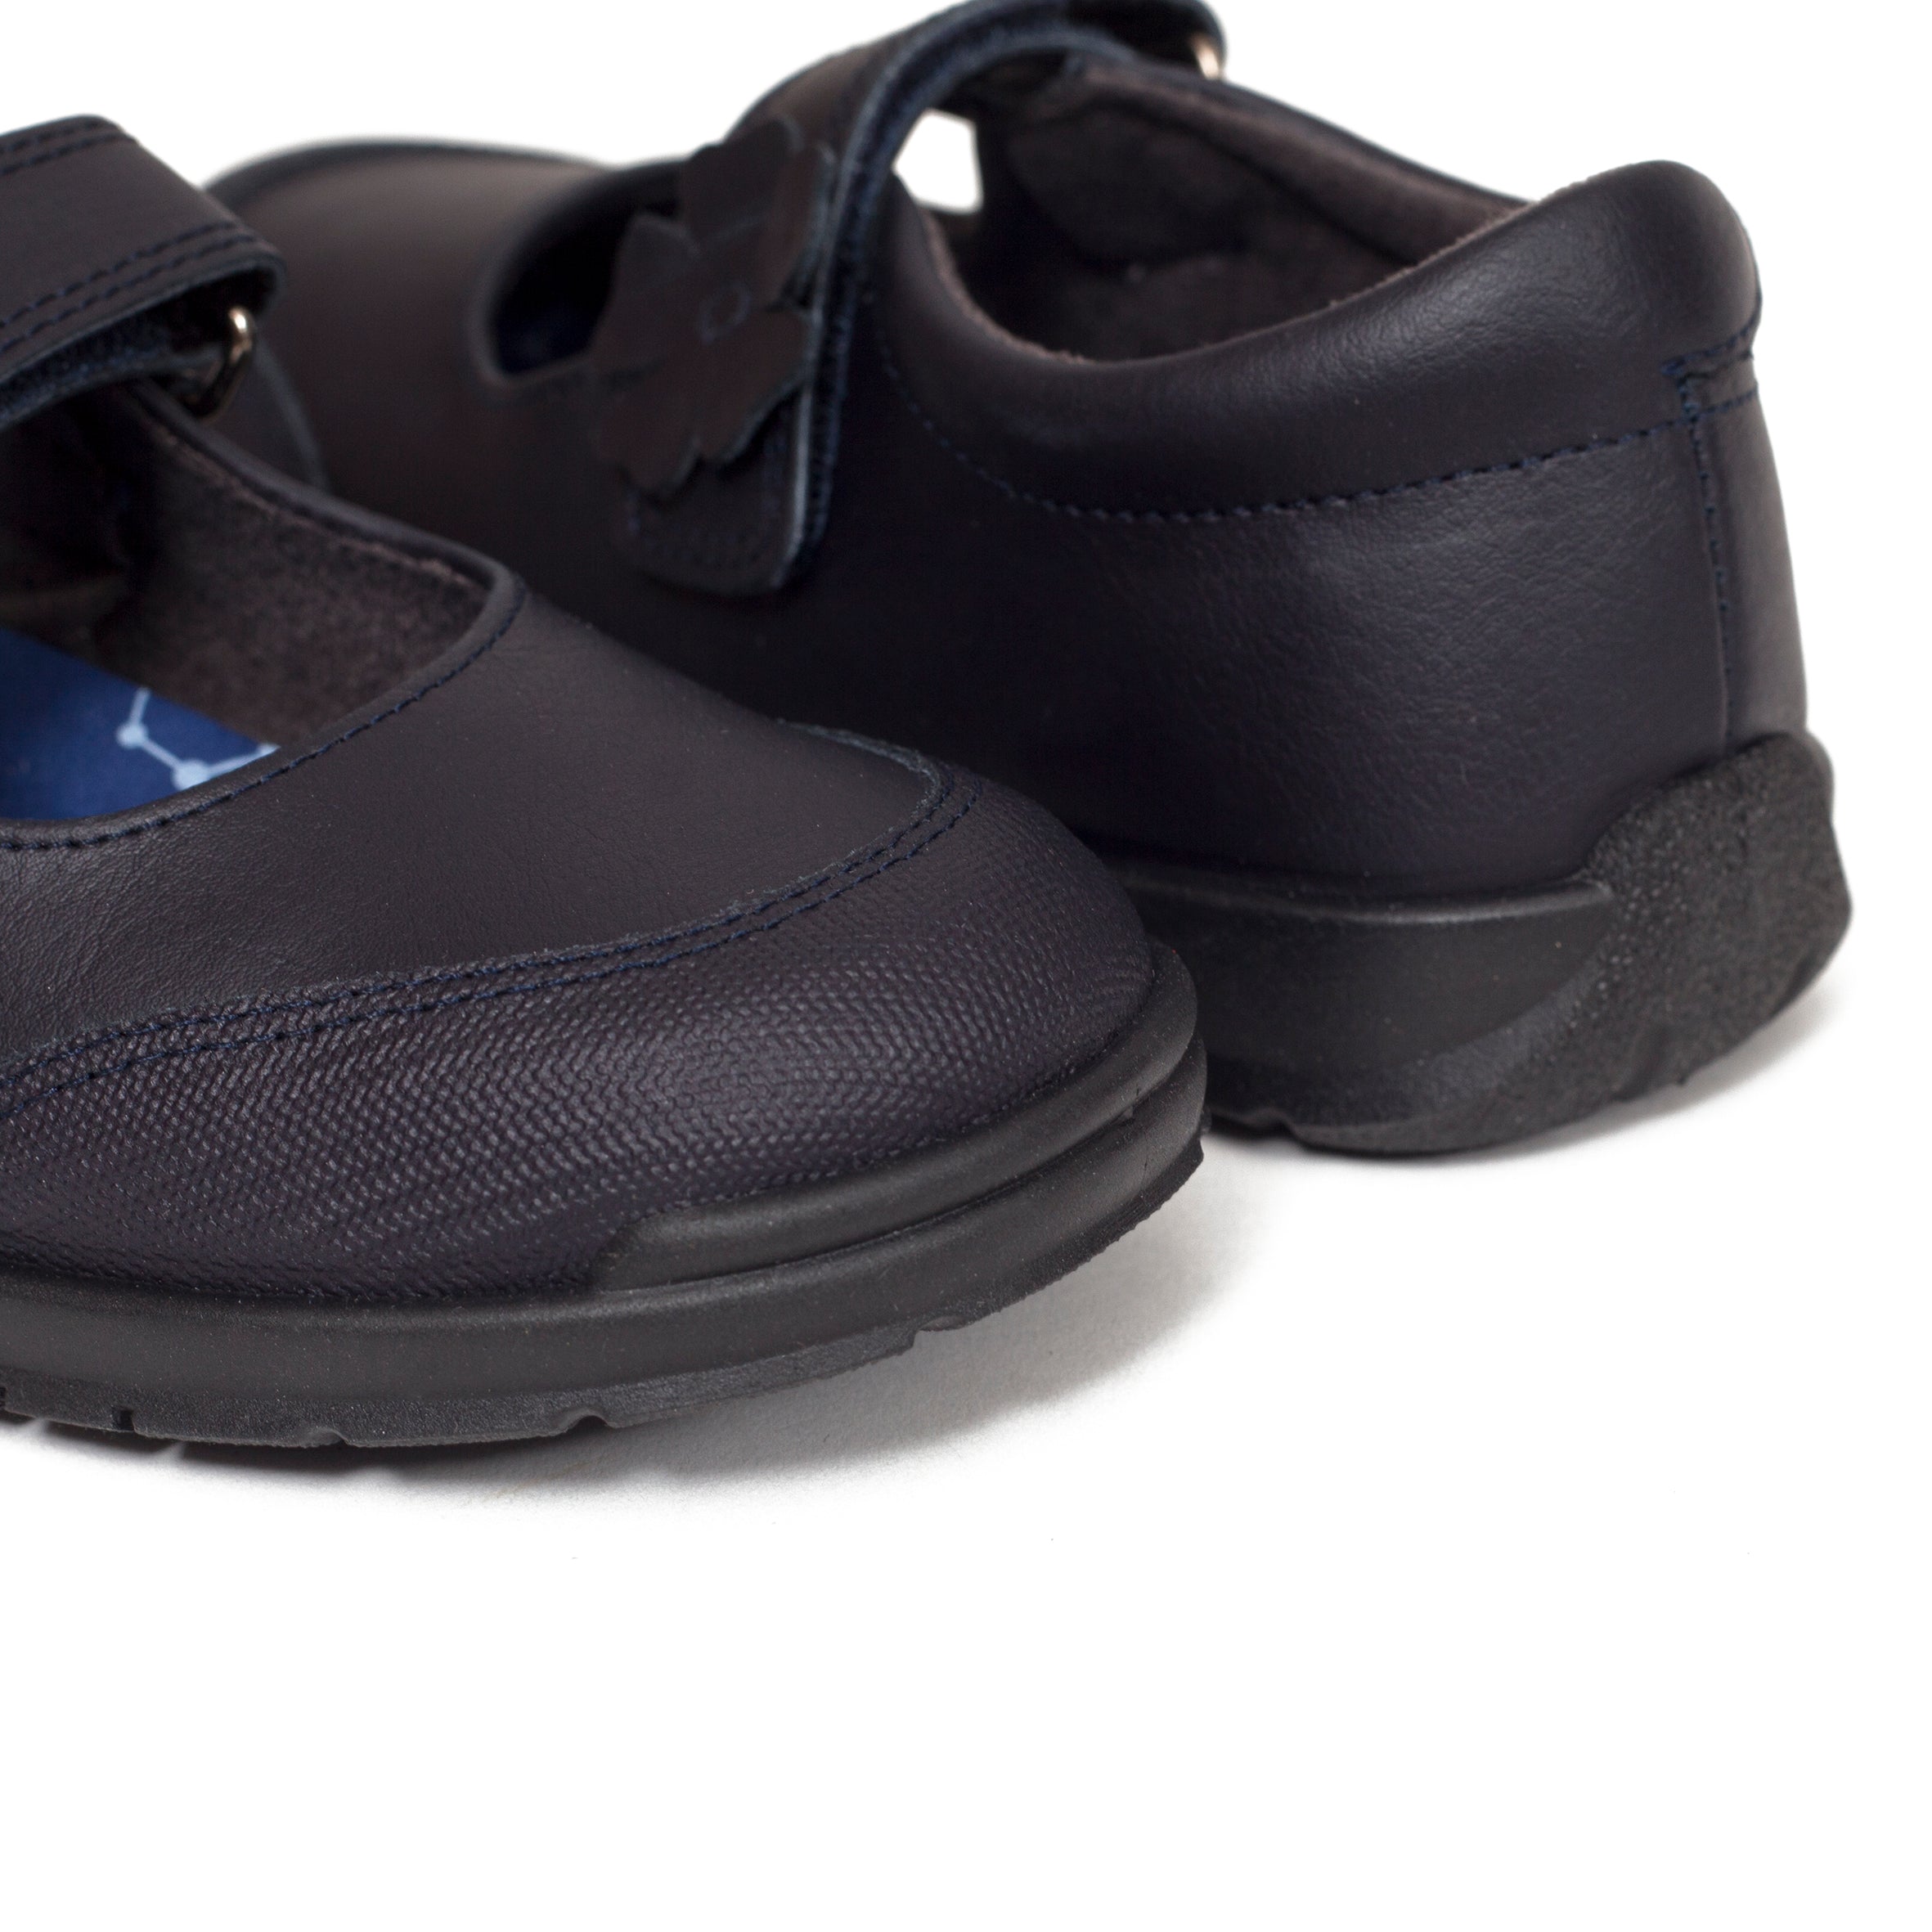 Zapatos para el colegio azul marino de niña merceditas made in Spain de marca miMaO